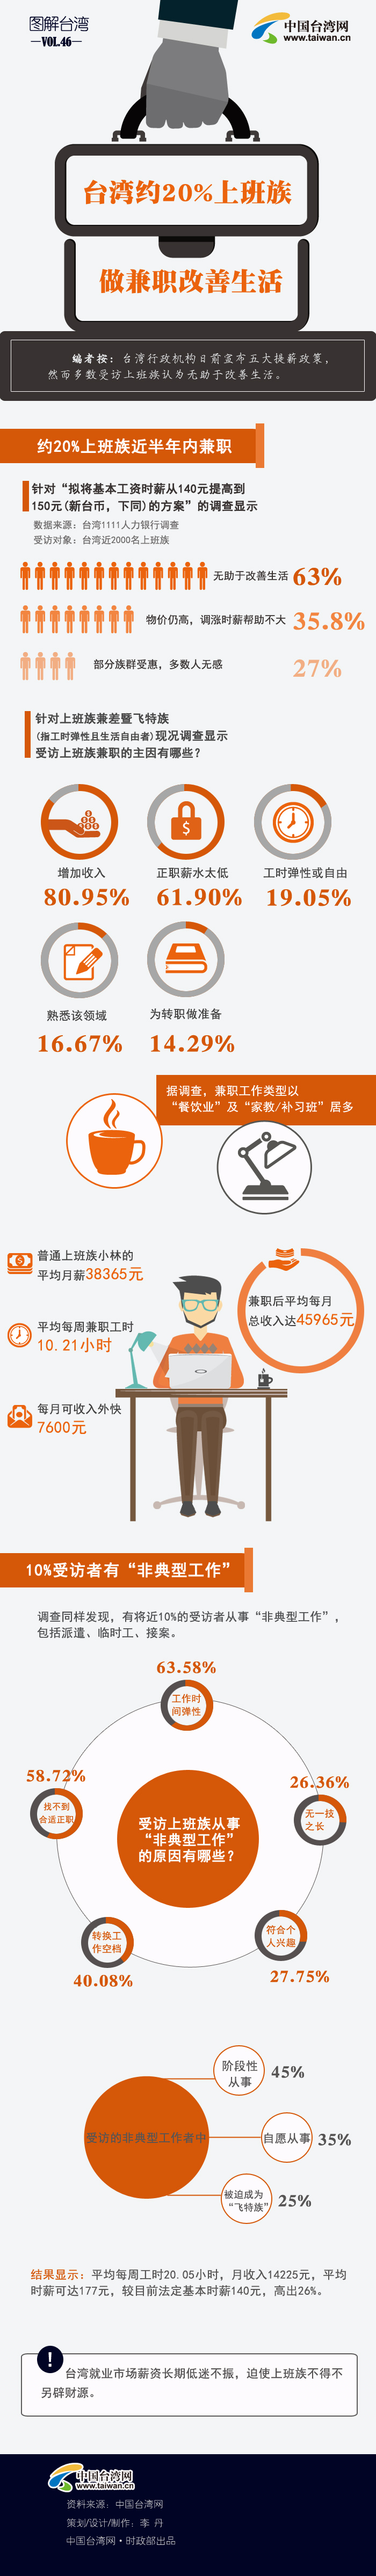 台湾约20%上班族做兼职改善生活